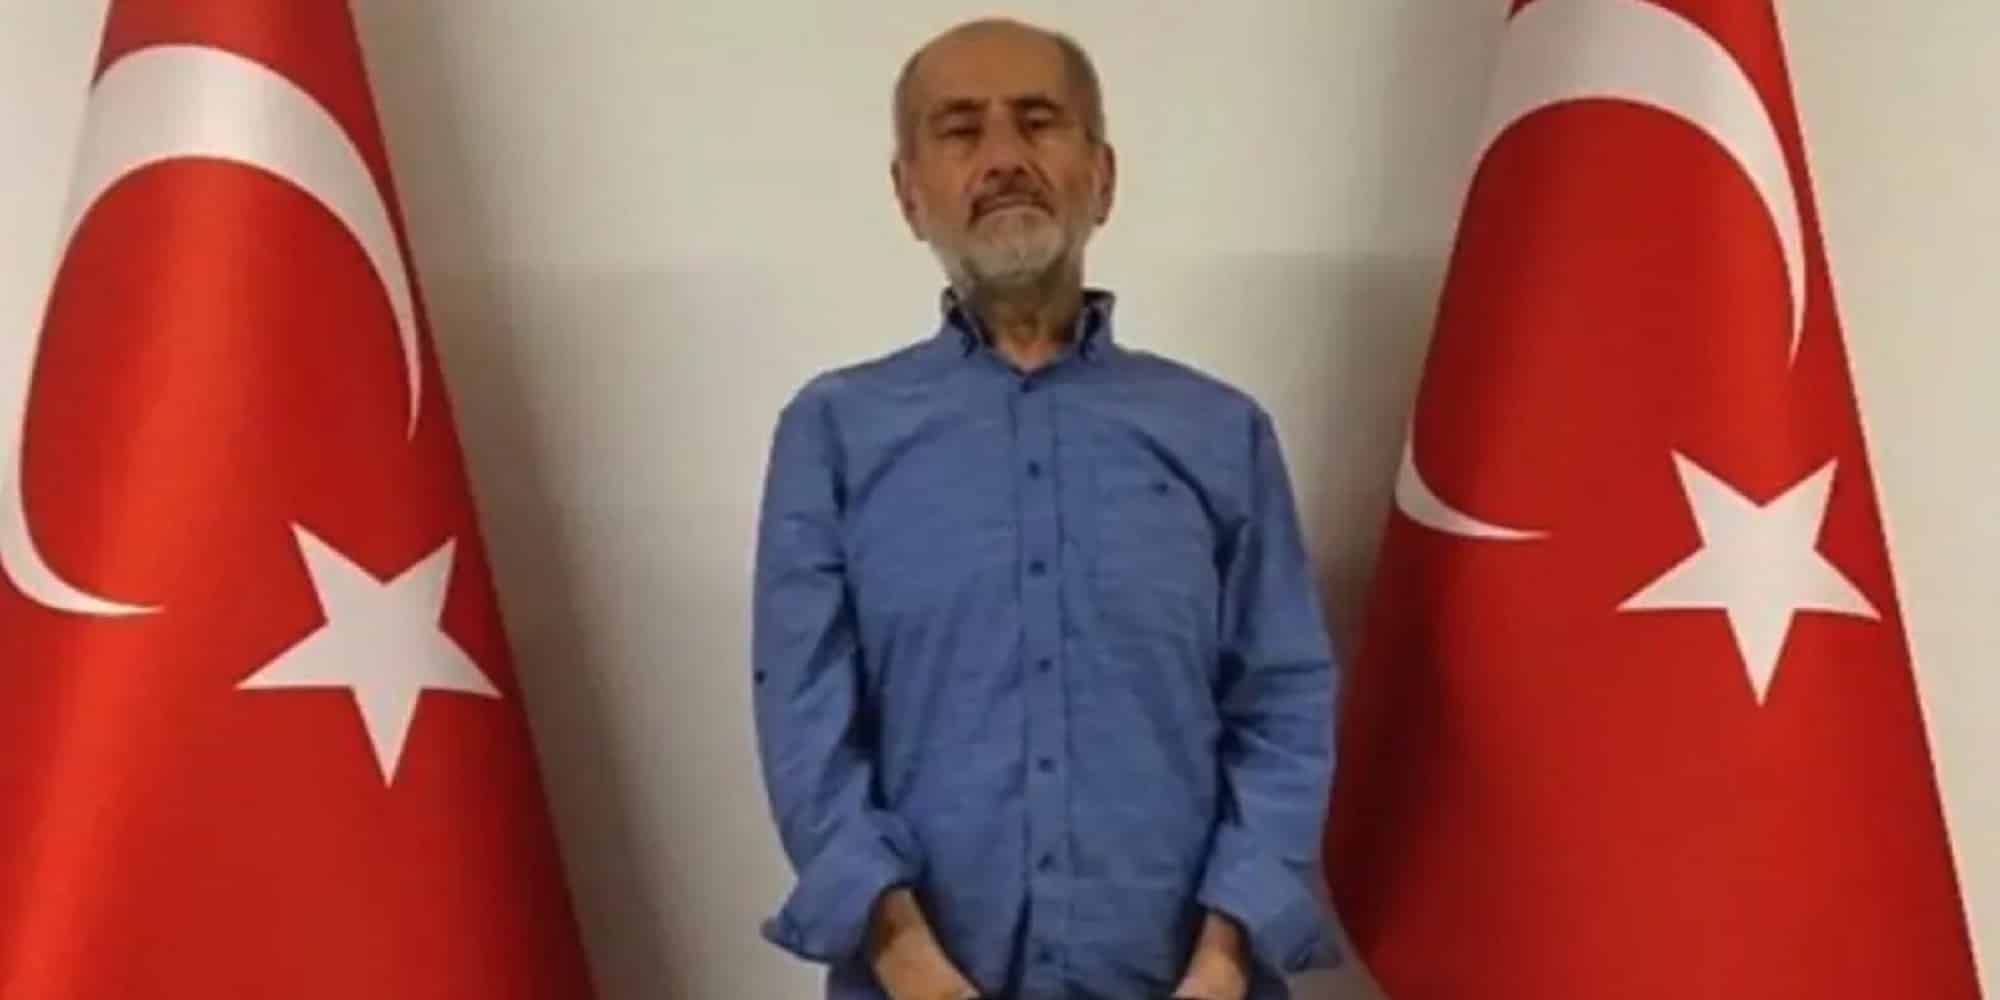 Ο Έλληνας που καταδικάστηκε για κατασκοπεία στην Τουρκία